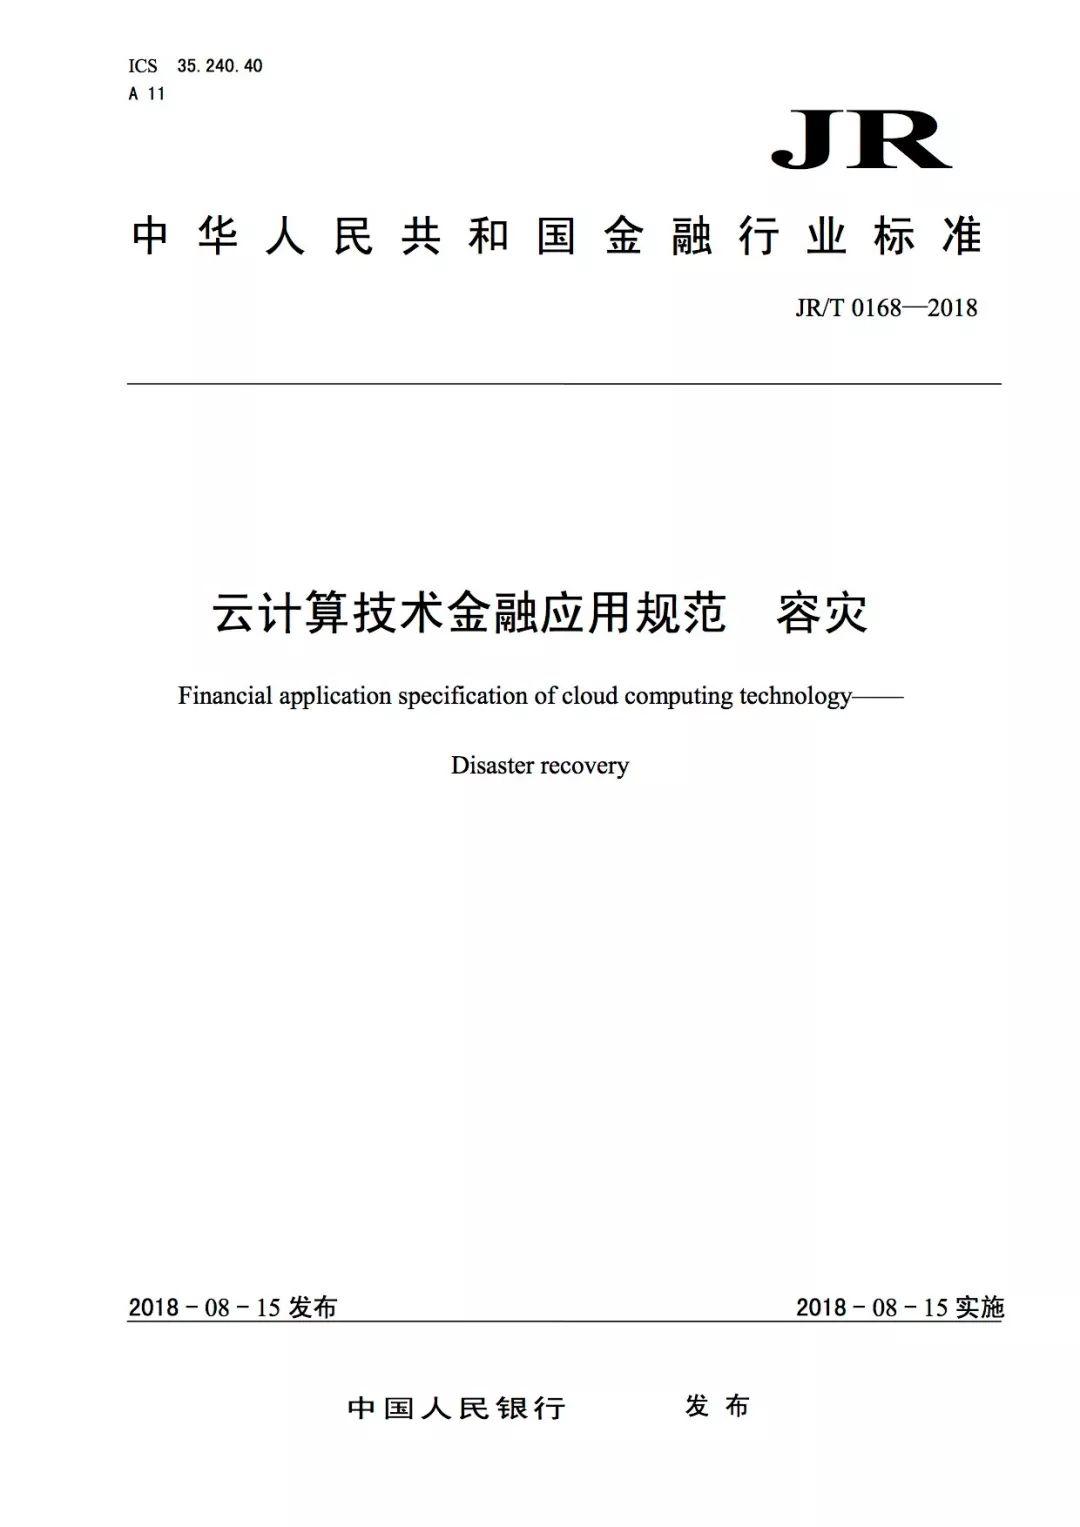 《云计算技术金融应用规范 技术架构》等三项金融行业标准正式发布